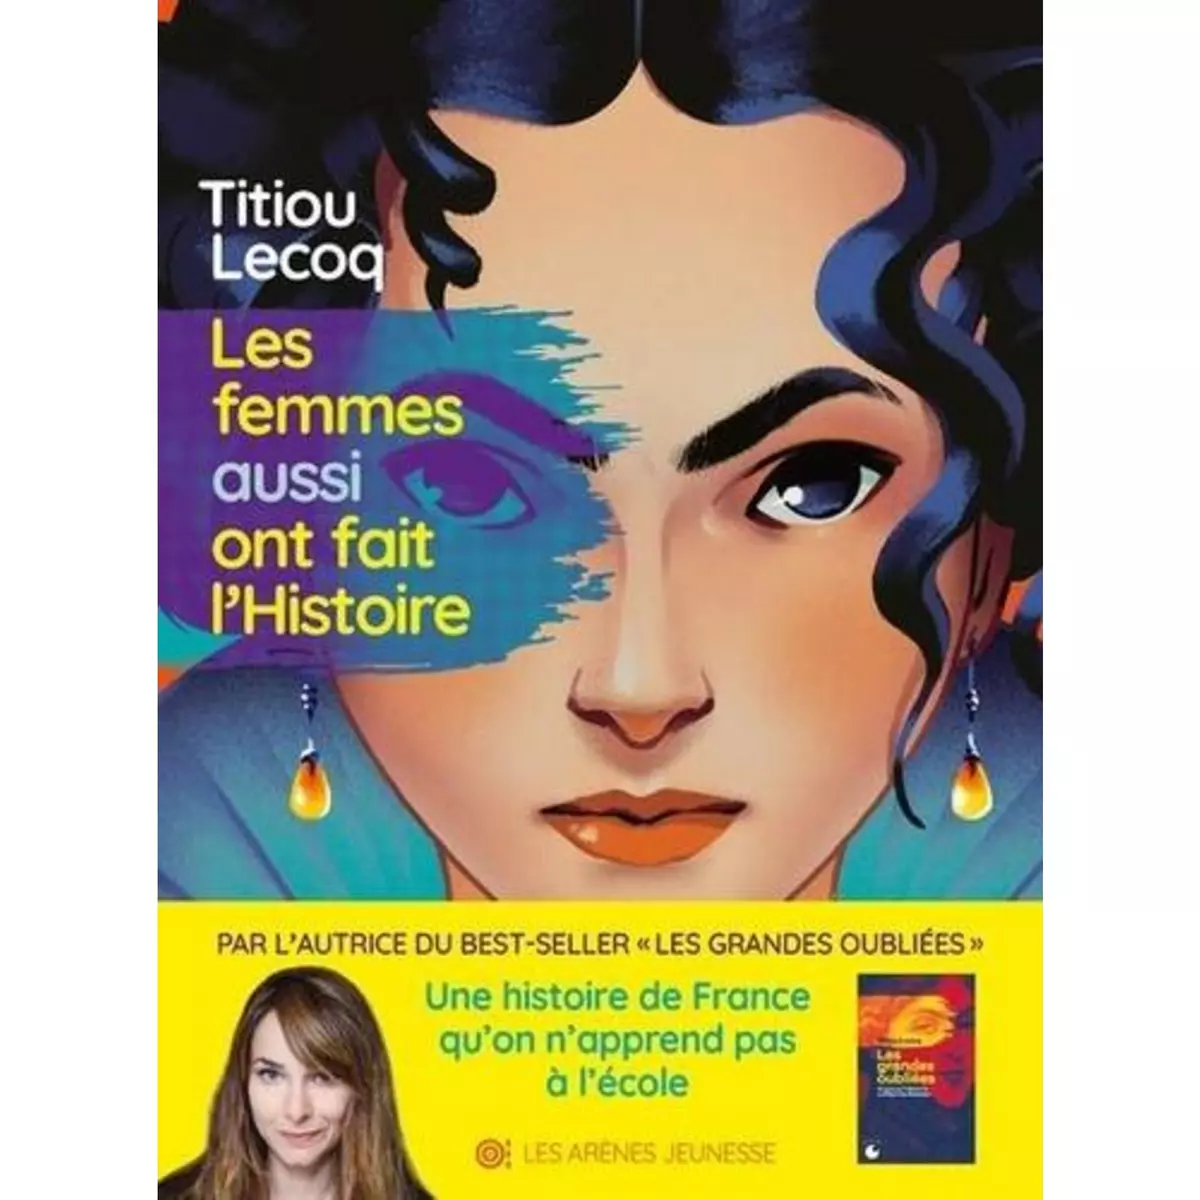  LES FEMMES AUSSI ONT FAIT L'HISTOIRE, Lecoq Titiou